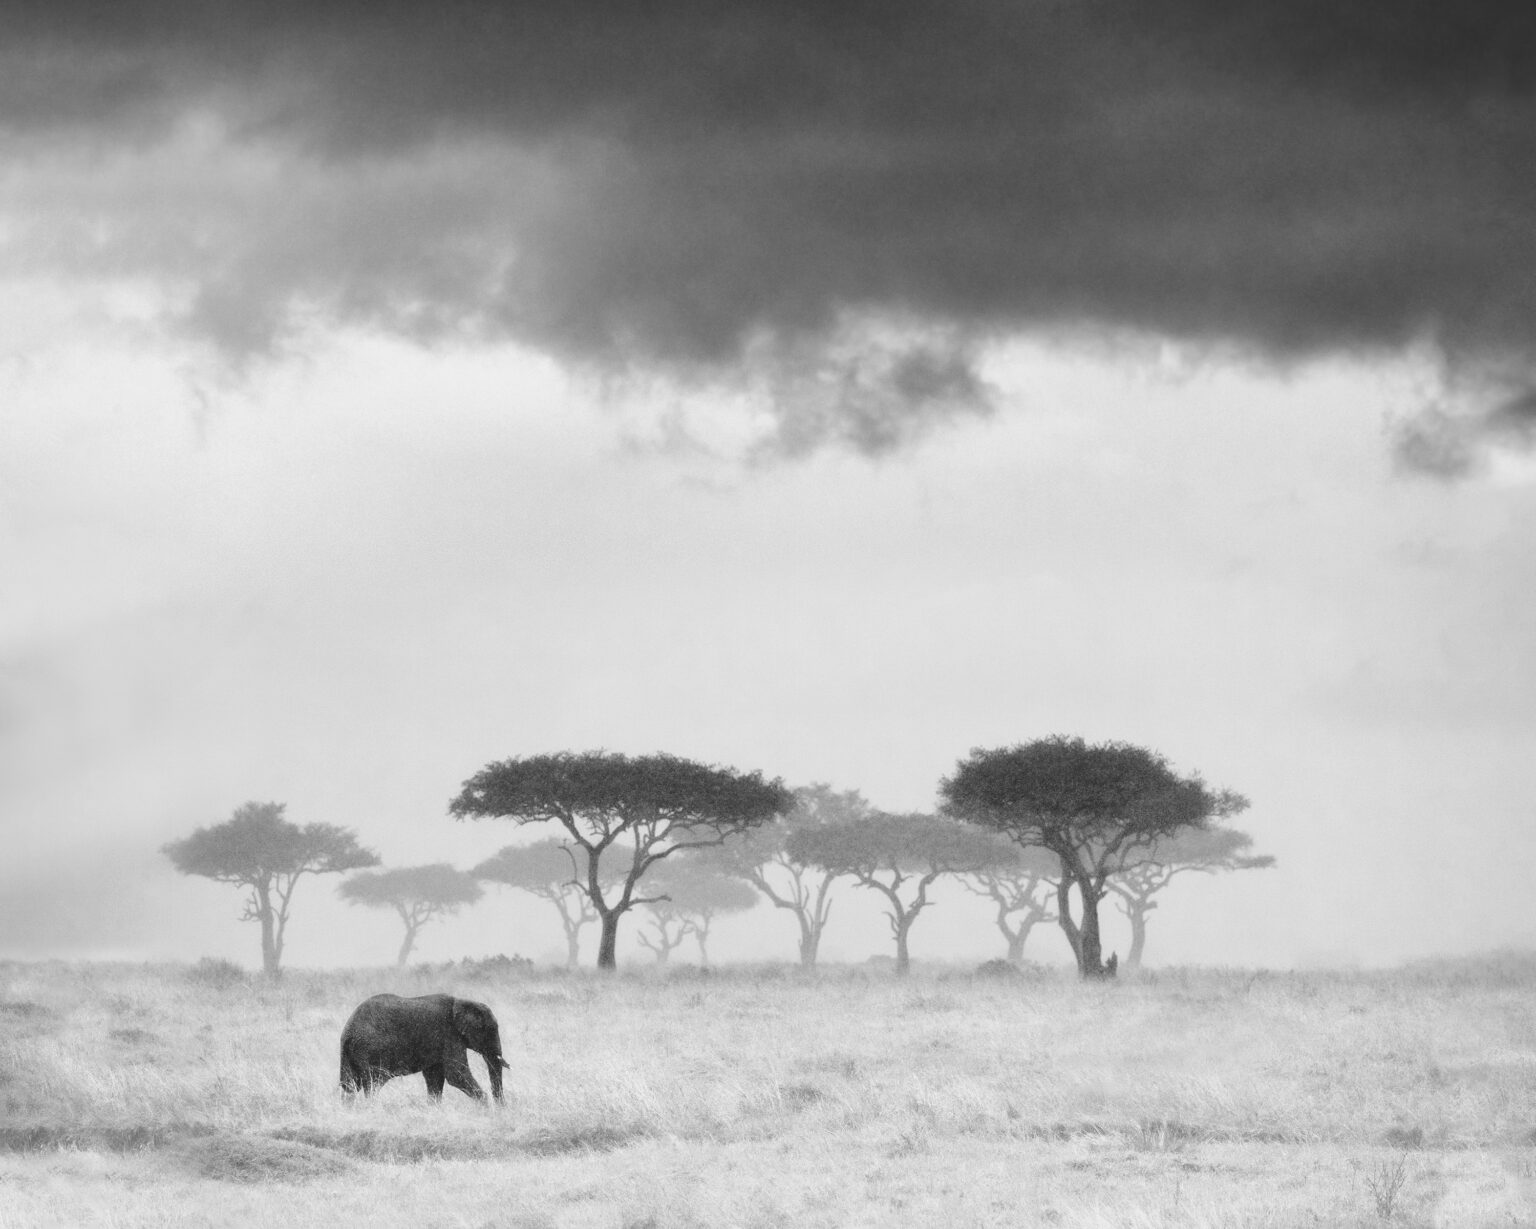 KENYA UNFORGETTABLE- Maasai Mara